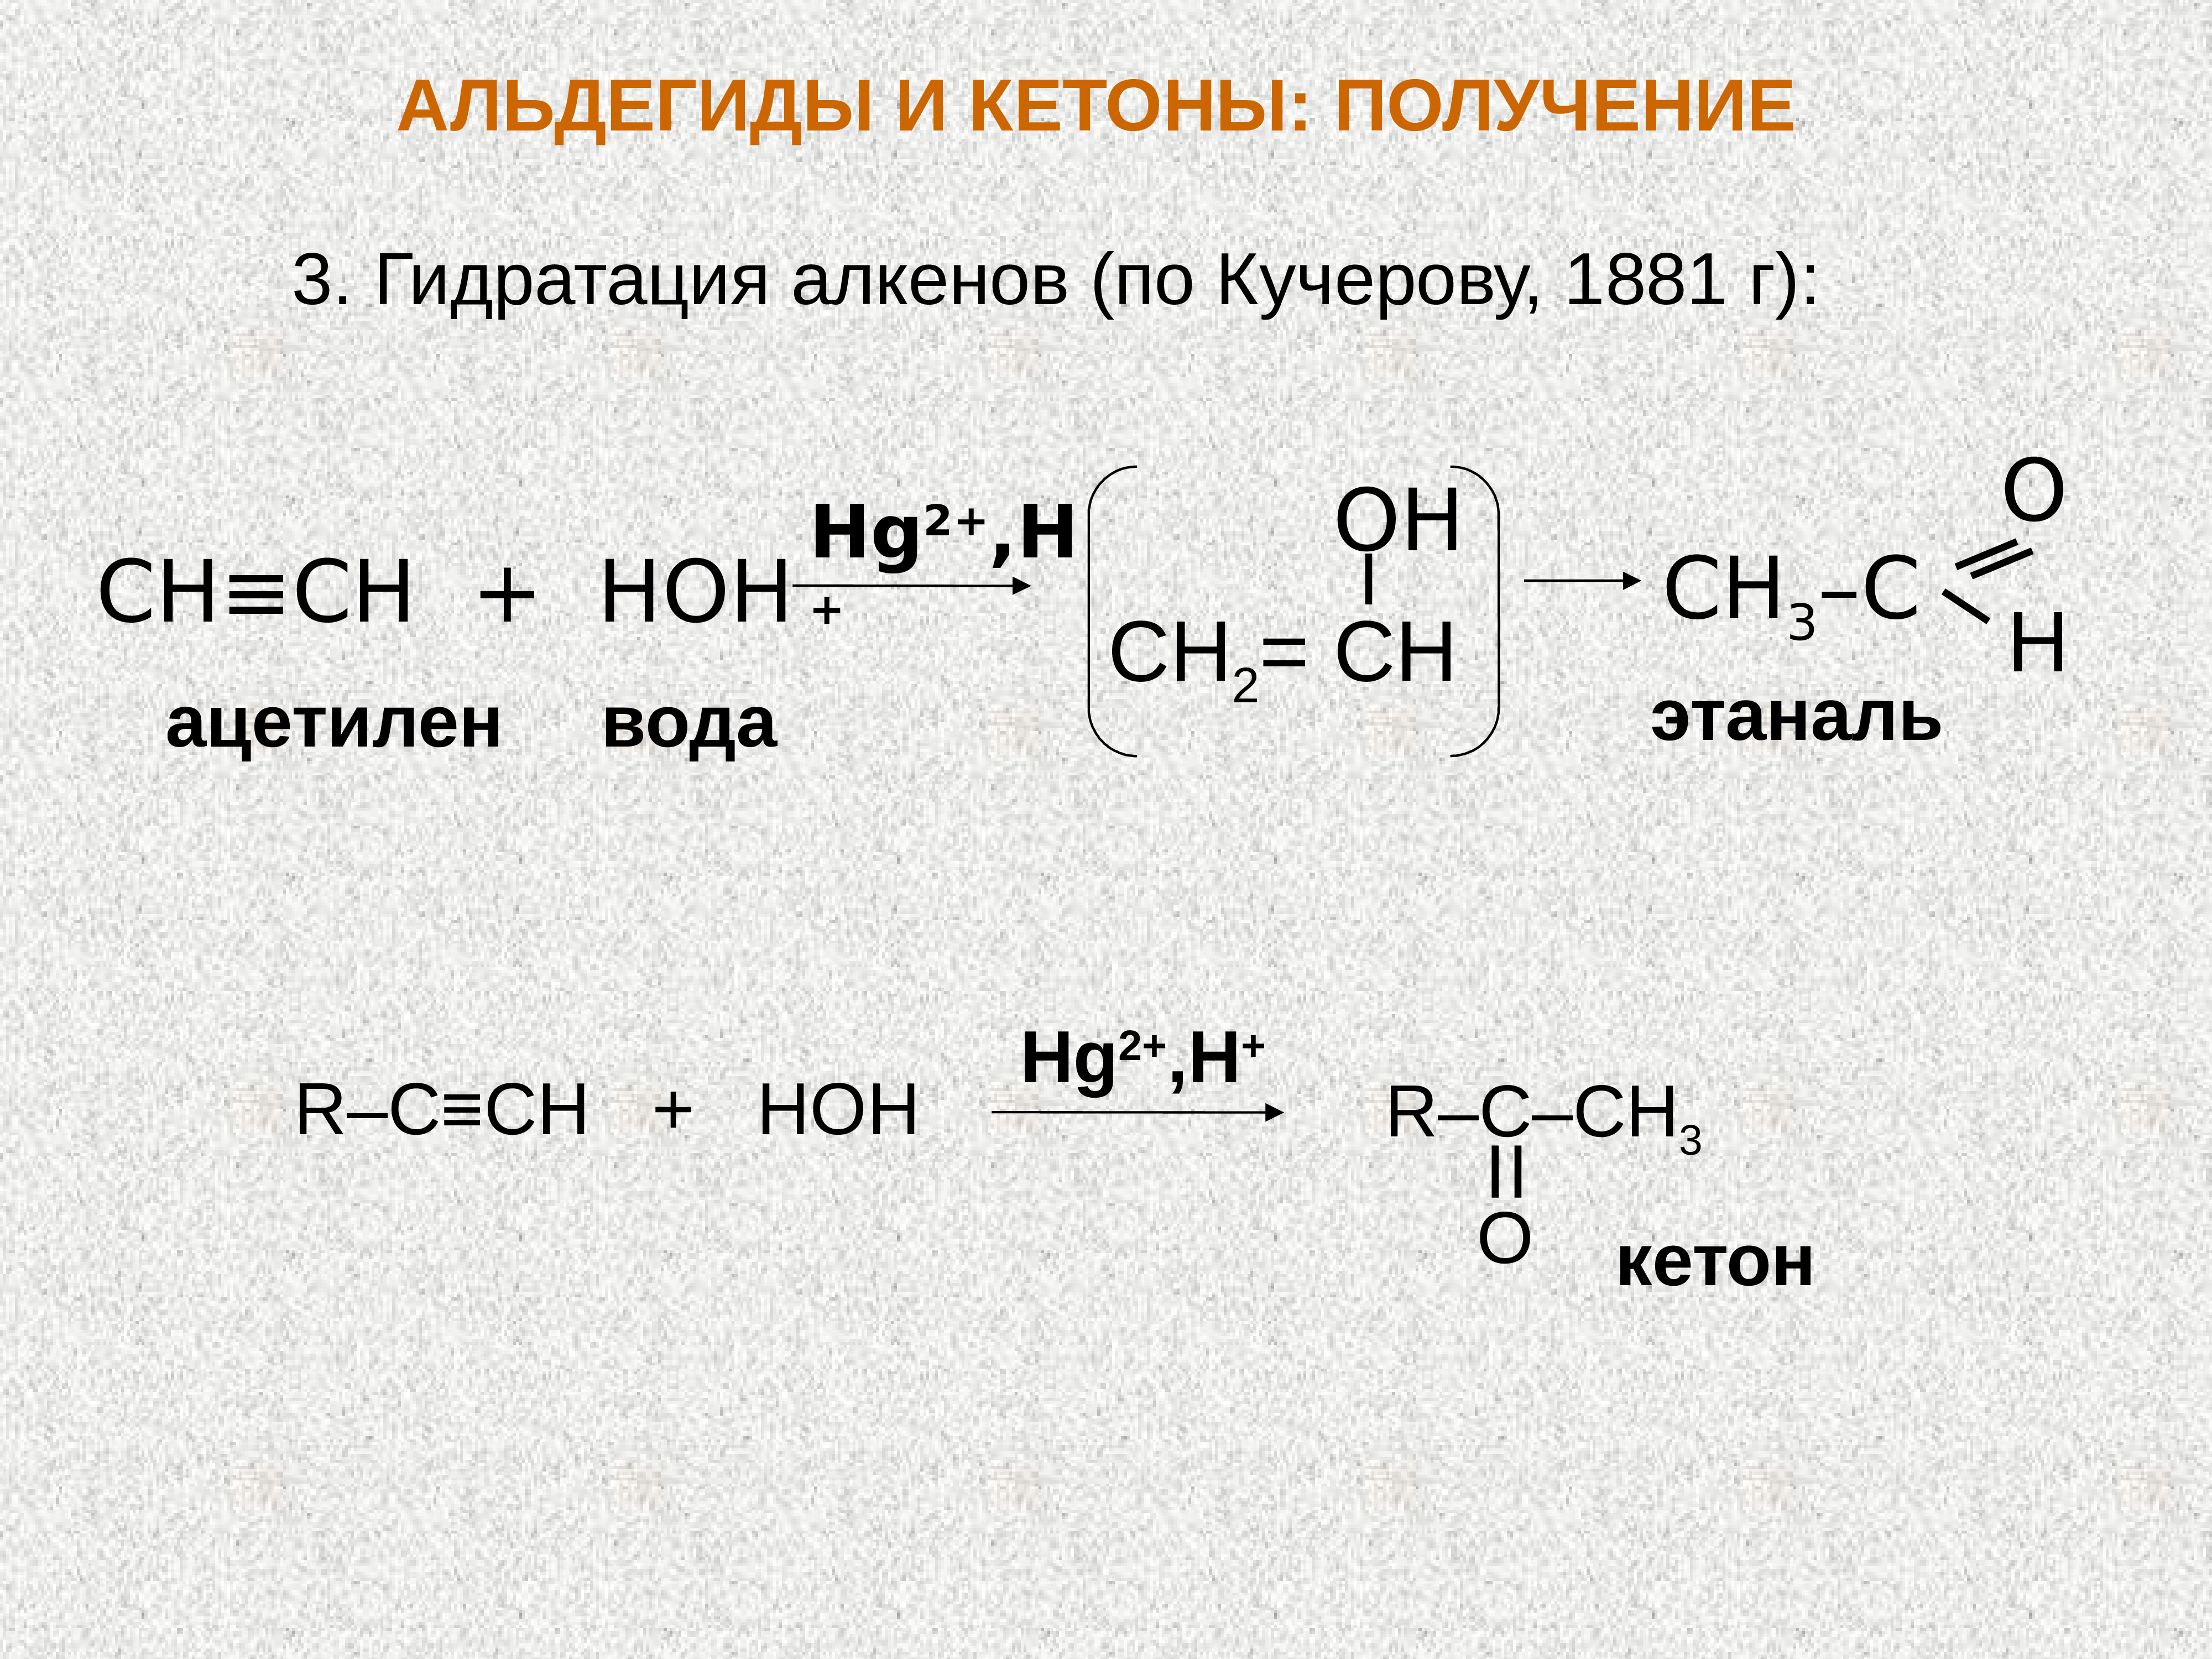 Альдегид с водой реакция. Ацетилен и вода hg2+. Ацетилен + диэтилкетон. Ацетилен и вода реакция. Ацетилен плюс вода.